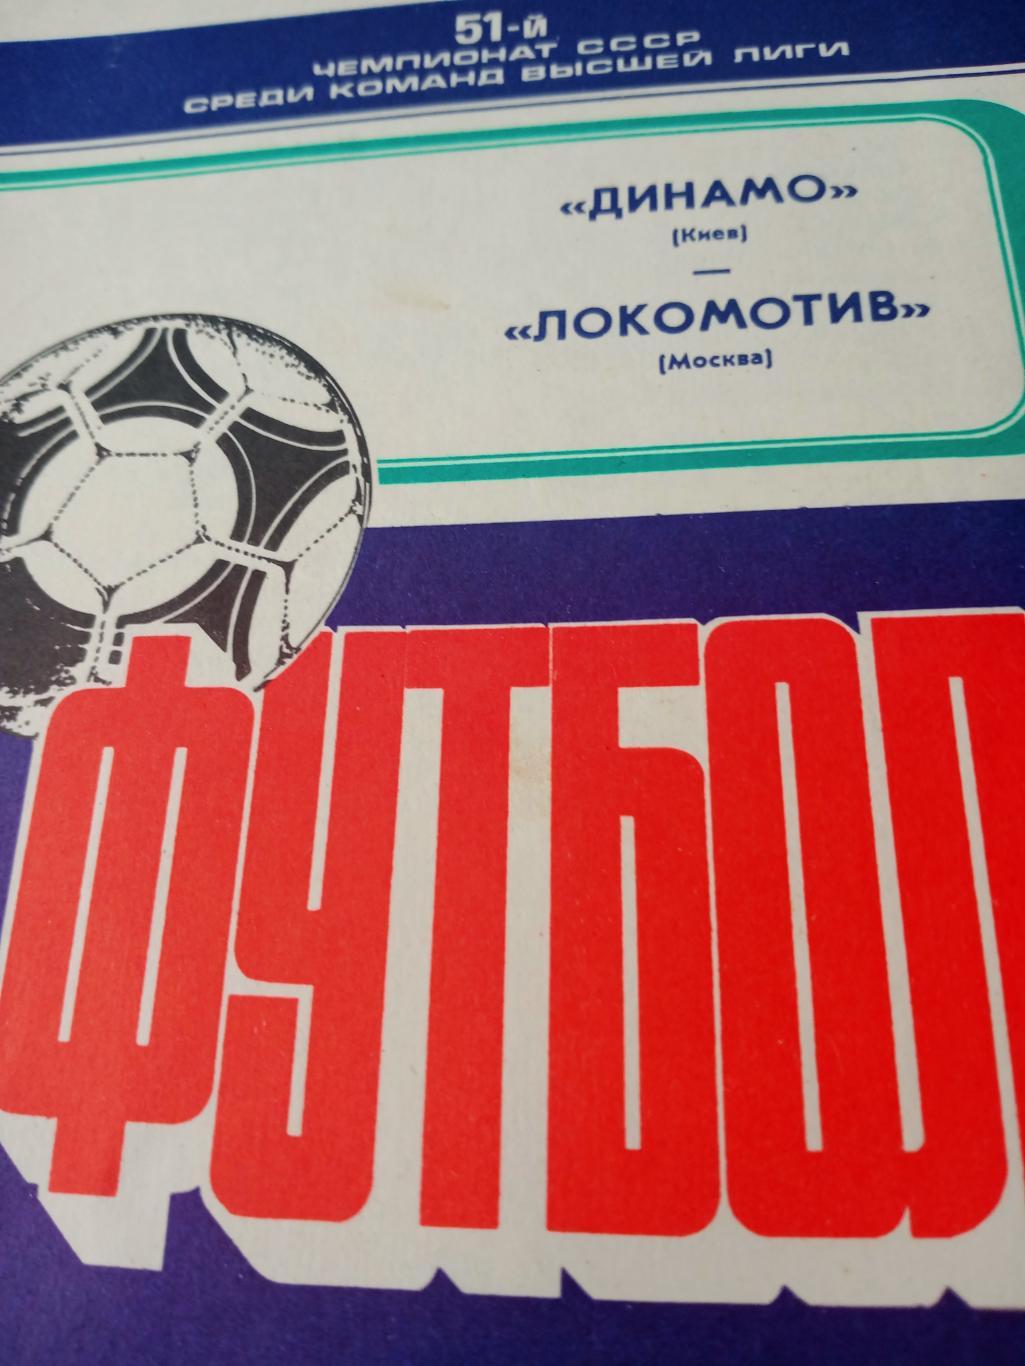 Динамо Киев - Локомотив Москва. 27 мая 1988 год